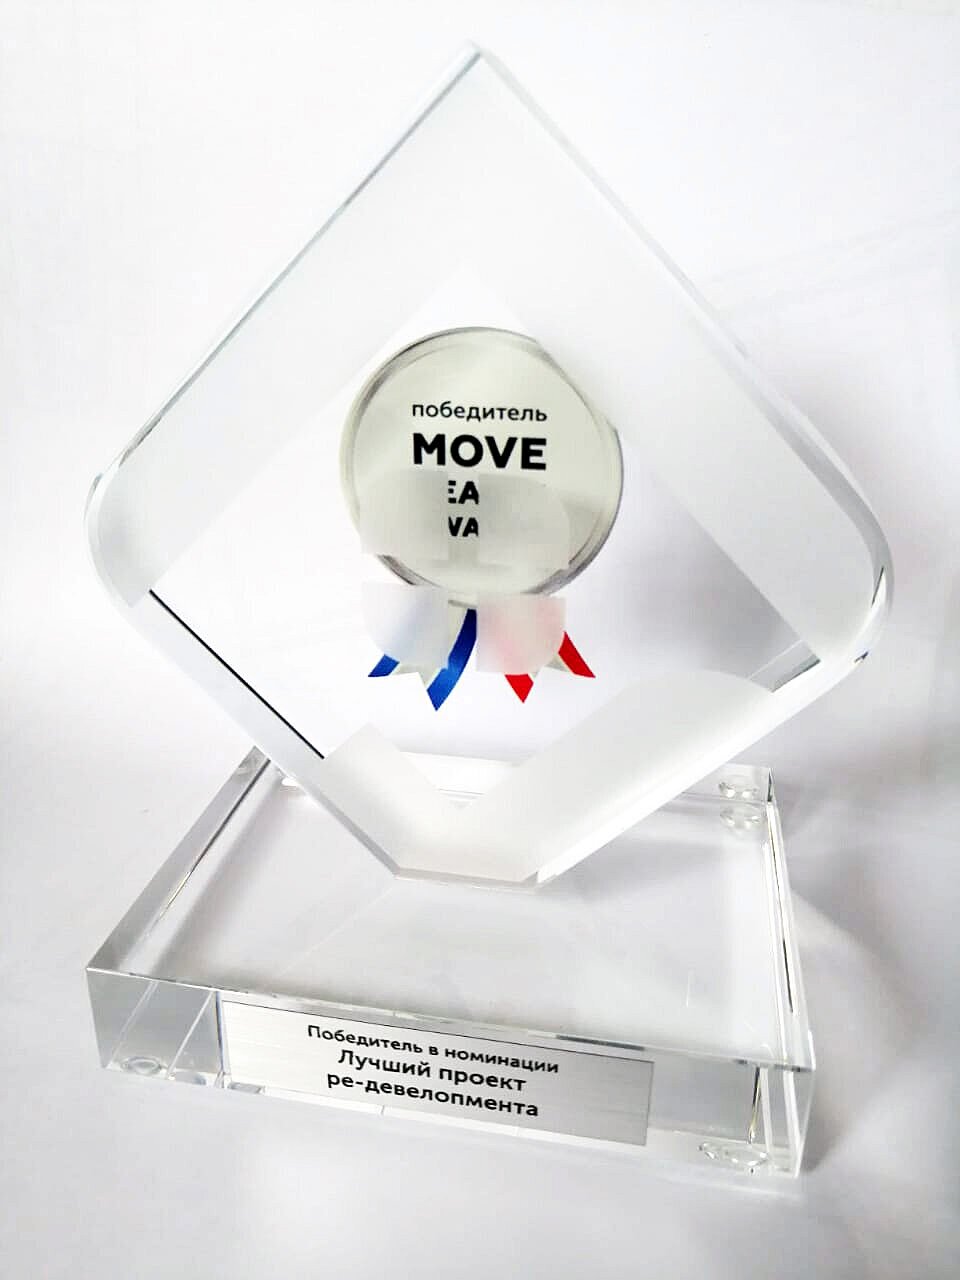 Площадка «Цифровое деловое пространство» получила премию в сфере недвижимости Move Realty Awards